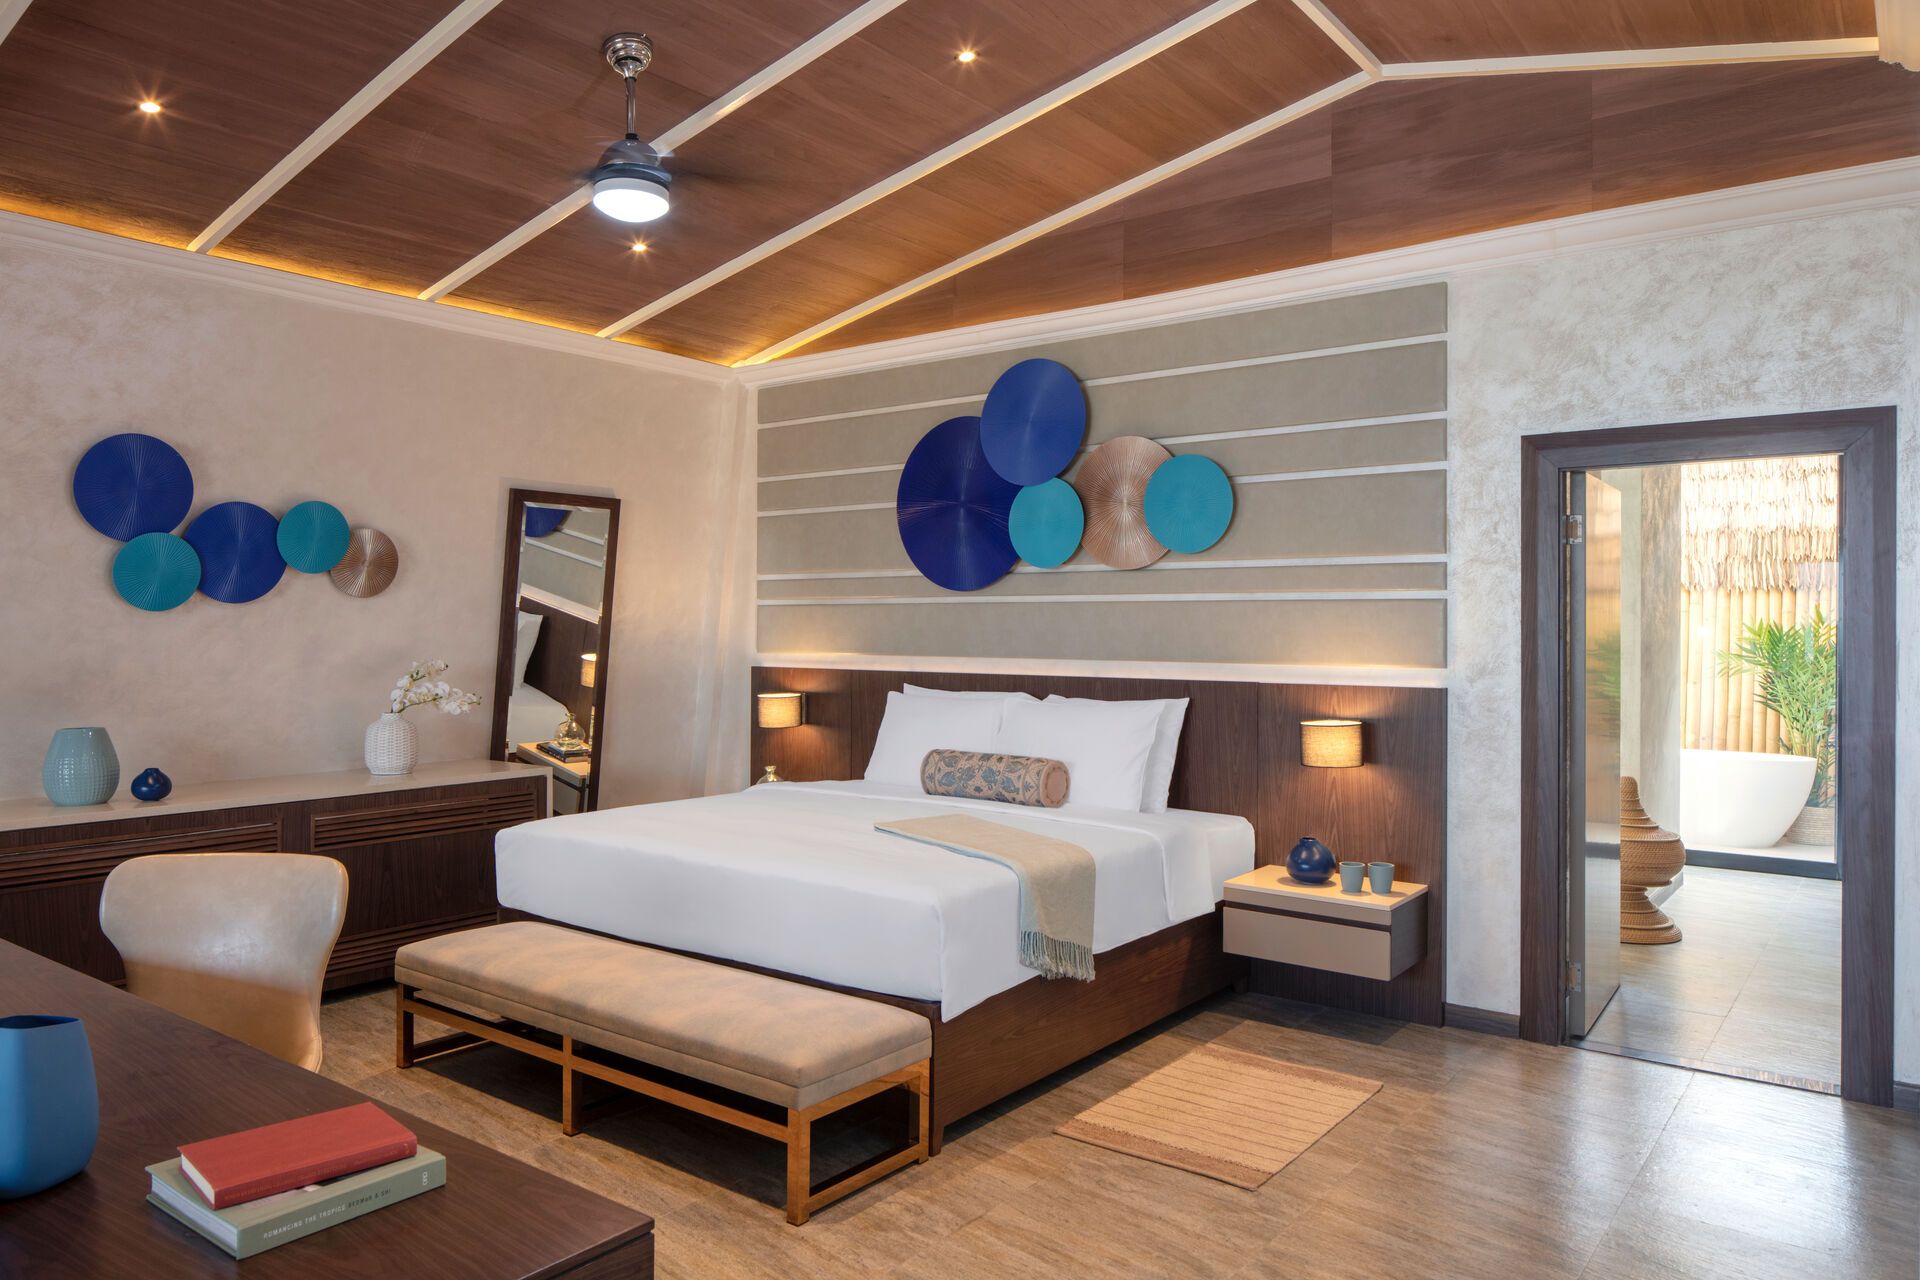 Emirats Arabes Unis - Dubaï - Hotel Anantara World Islands Resort 5*